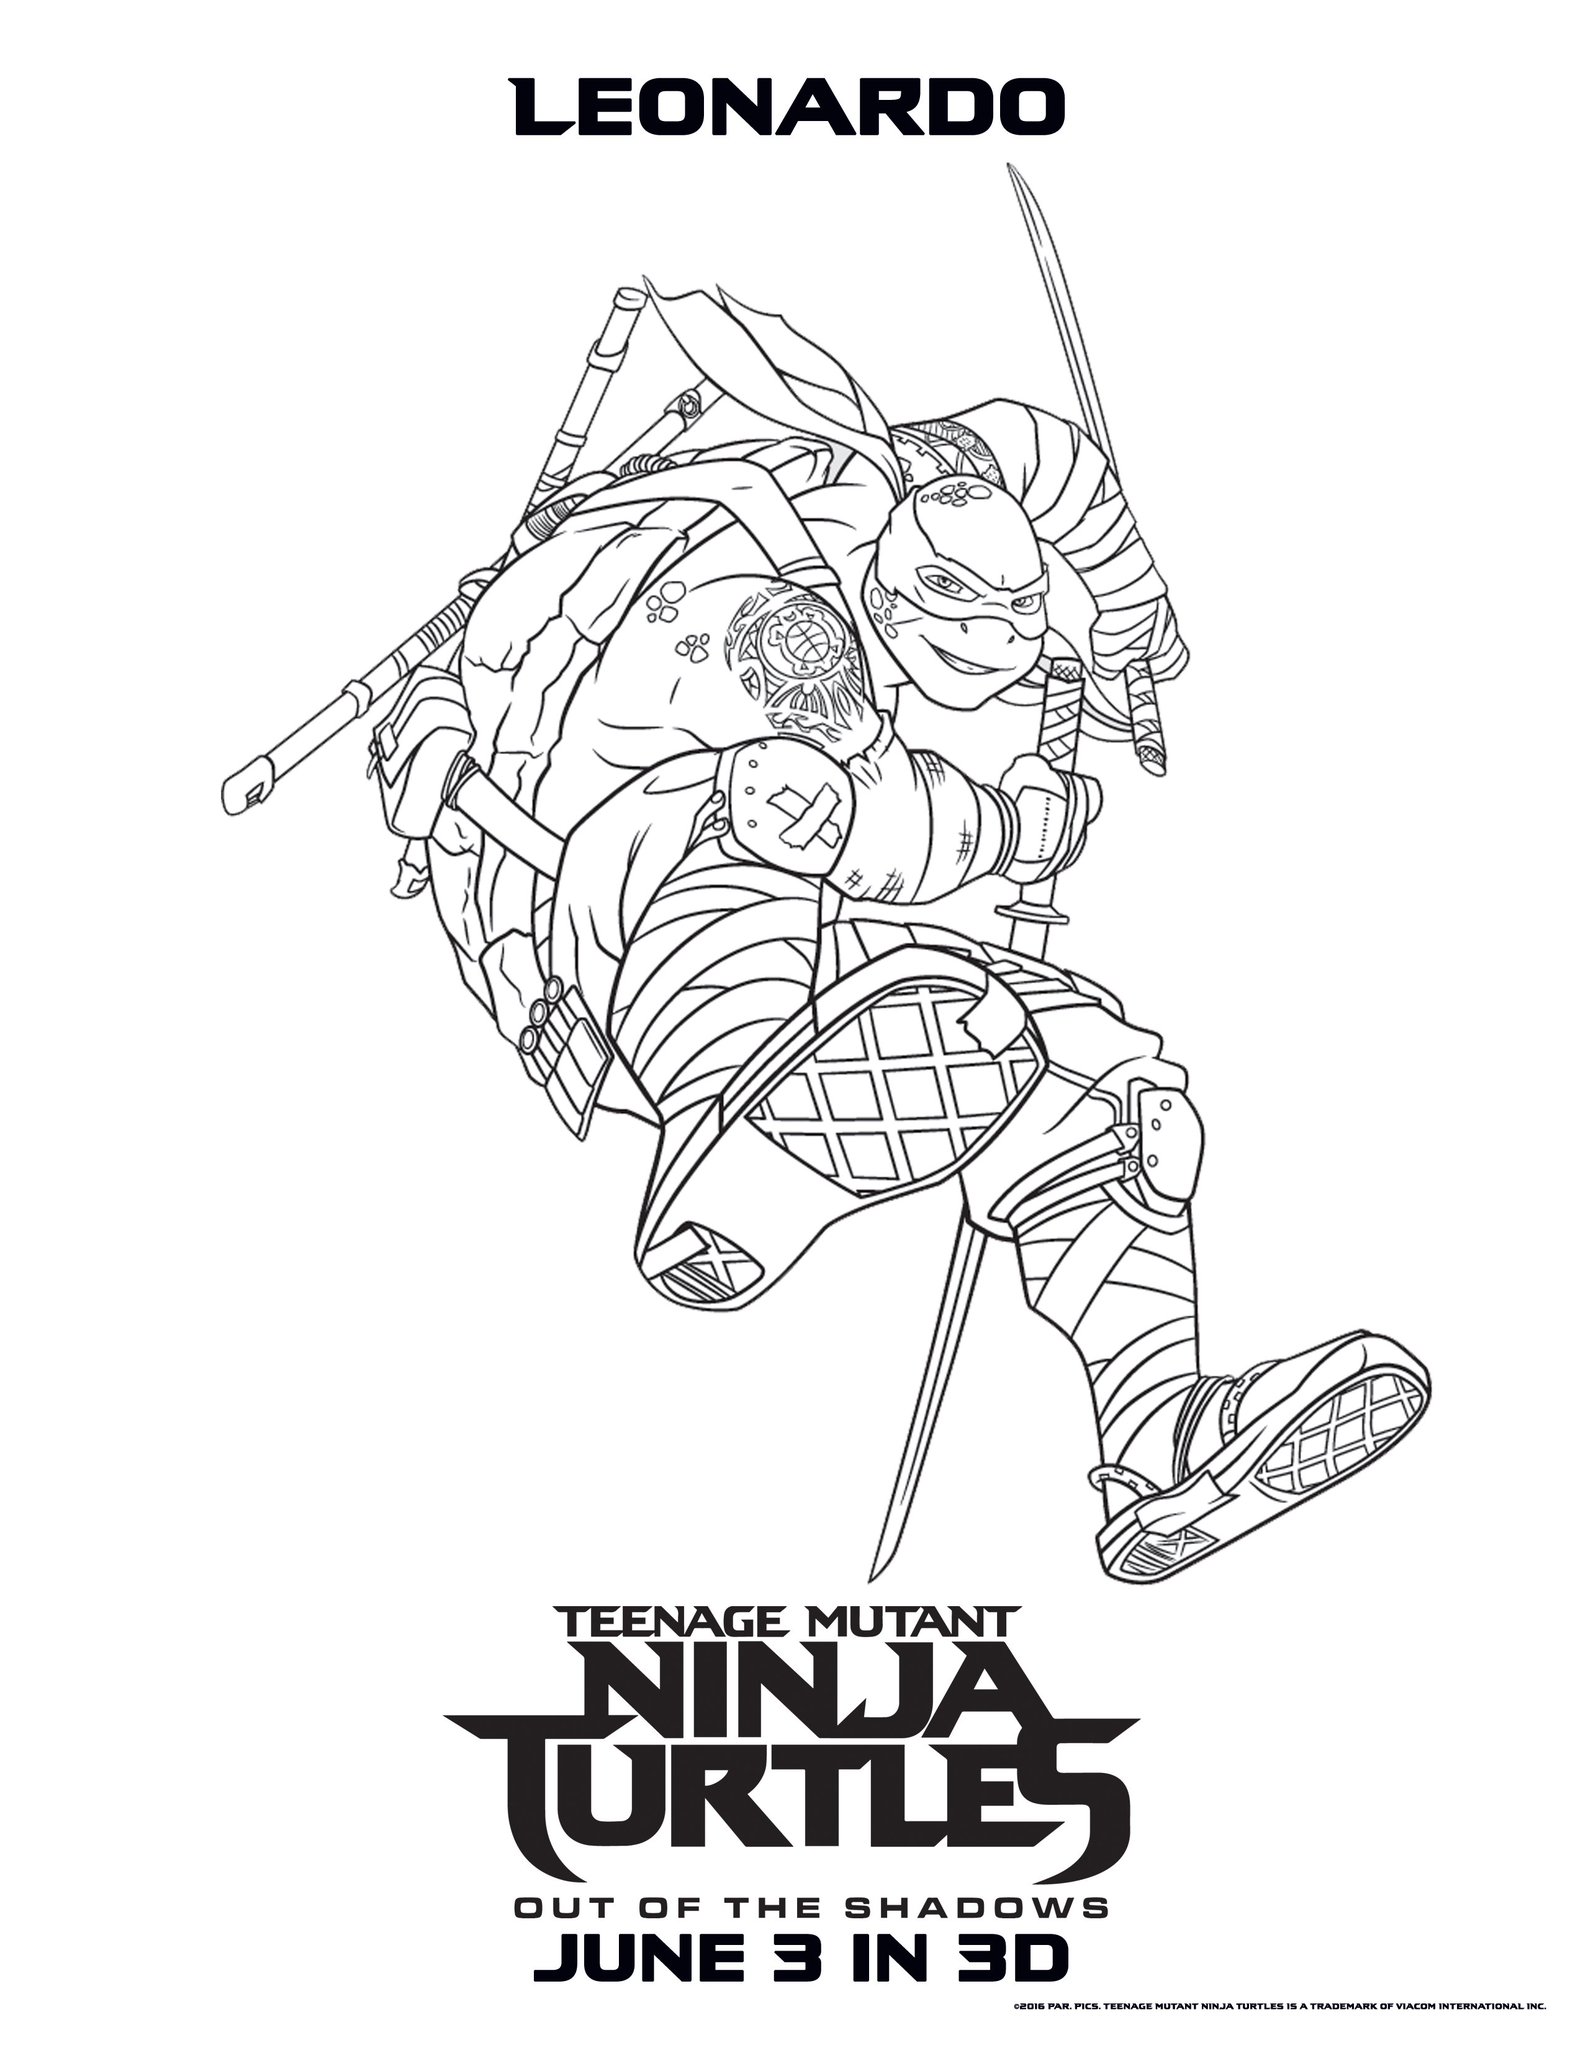 Teenage Mutant Ninja Turtles Coloring Pages - Best ...